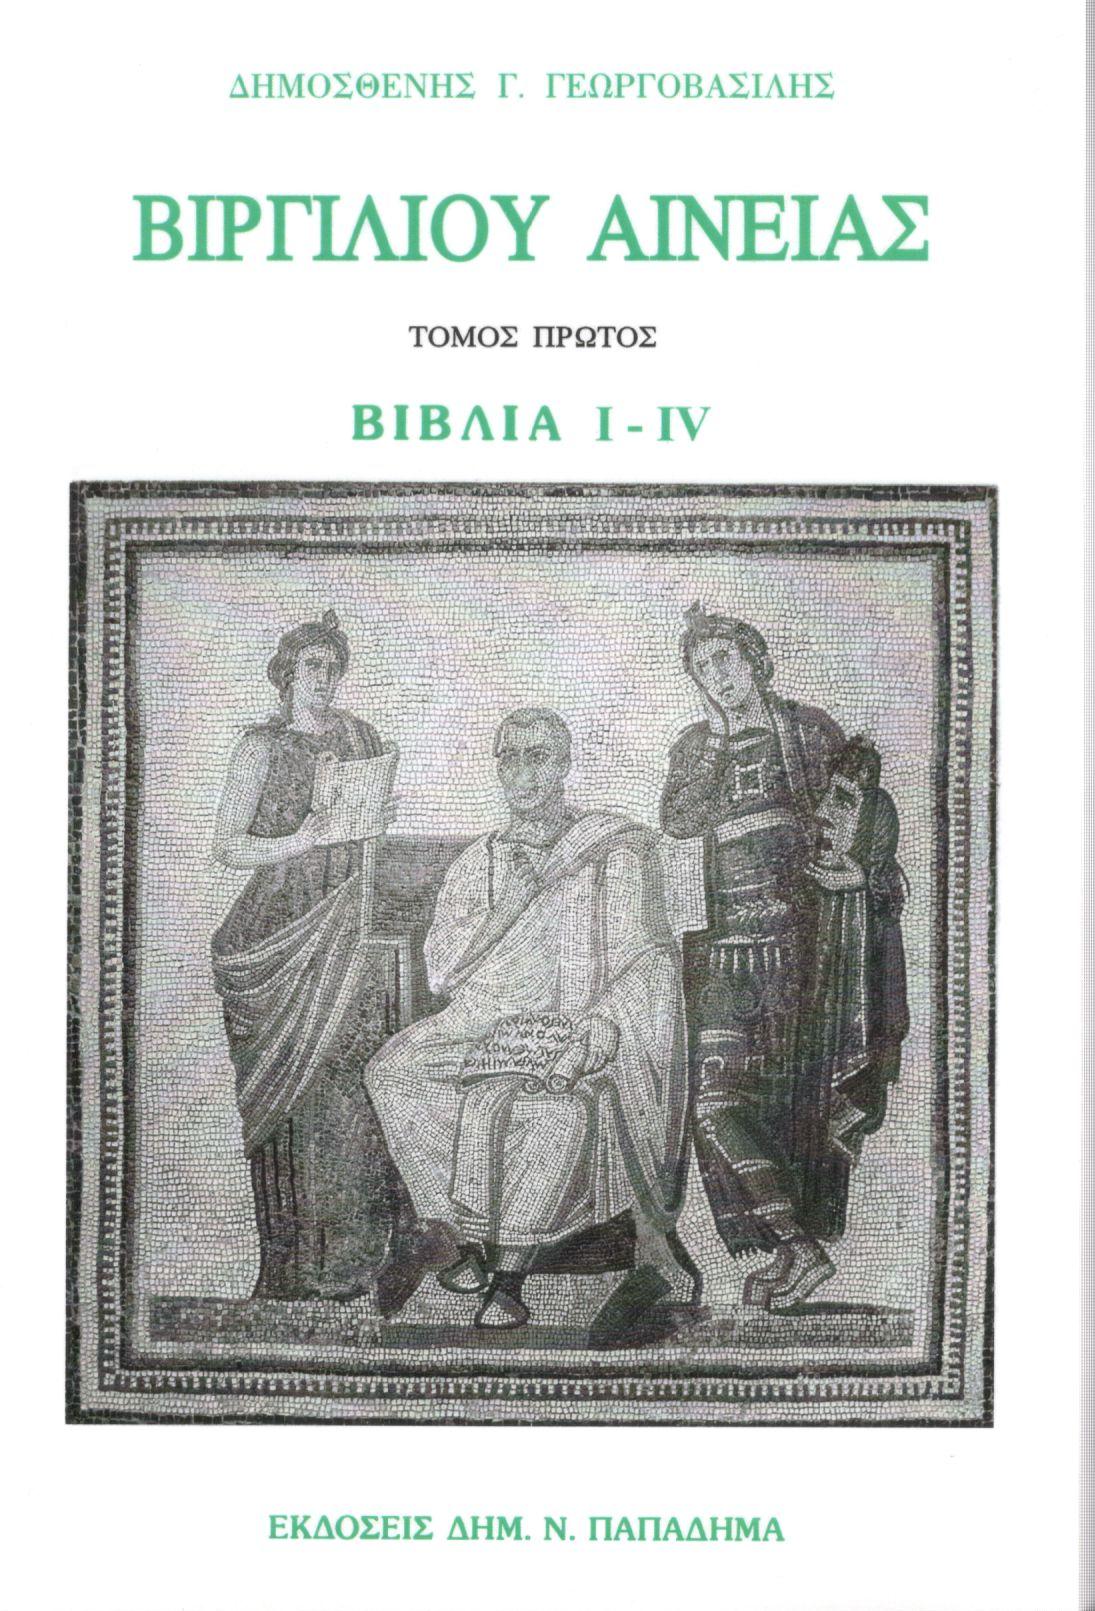 Βιργιλίου Αινειάς, Τόμος πρώτος, Βιβλία I-IV